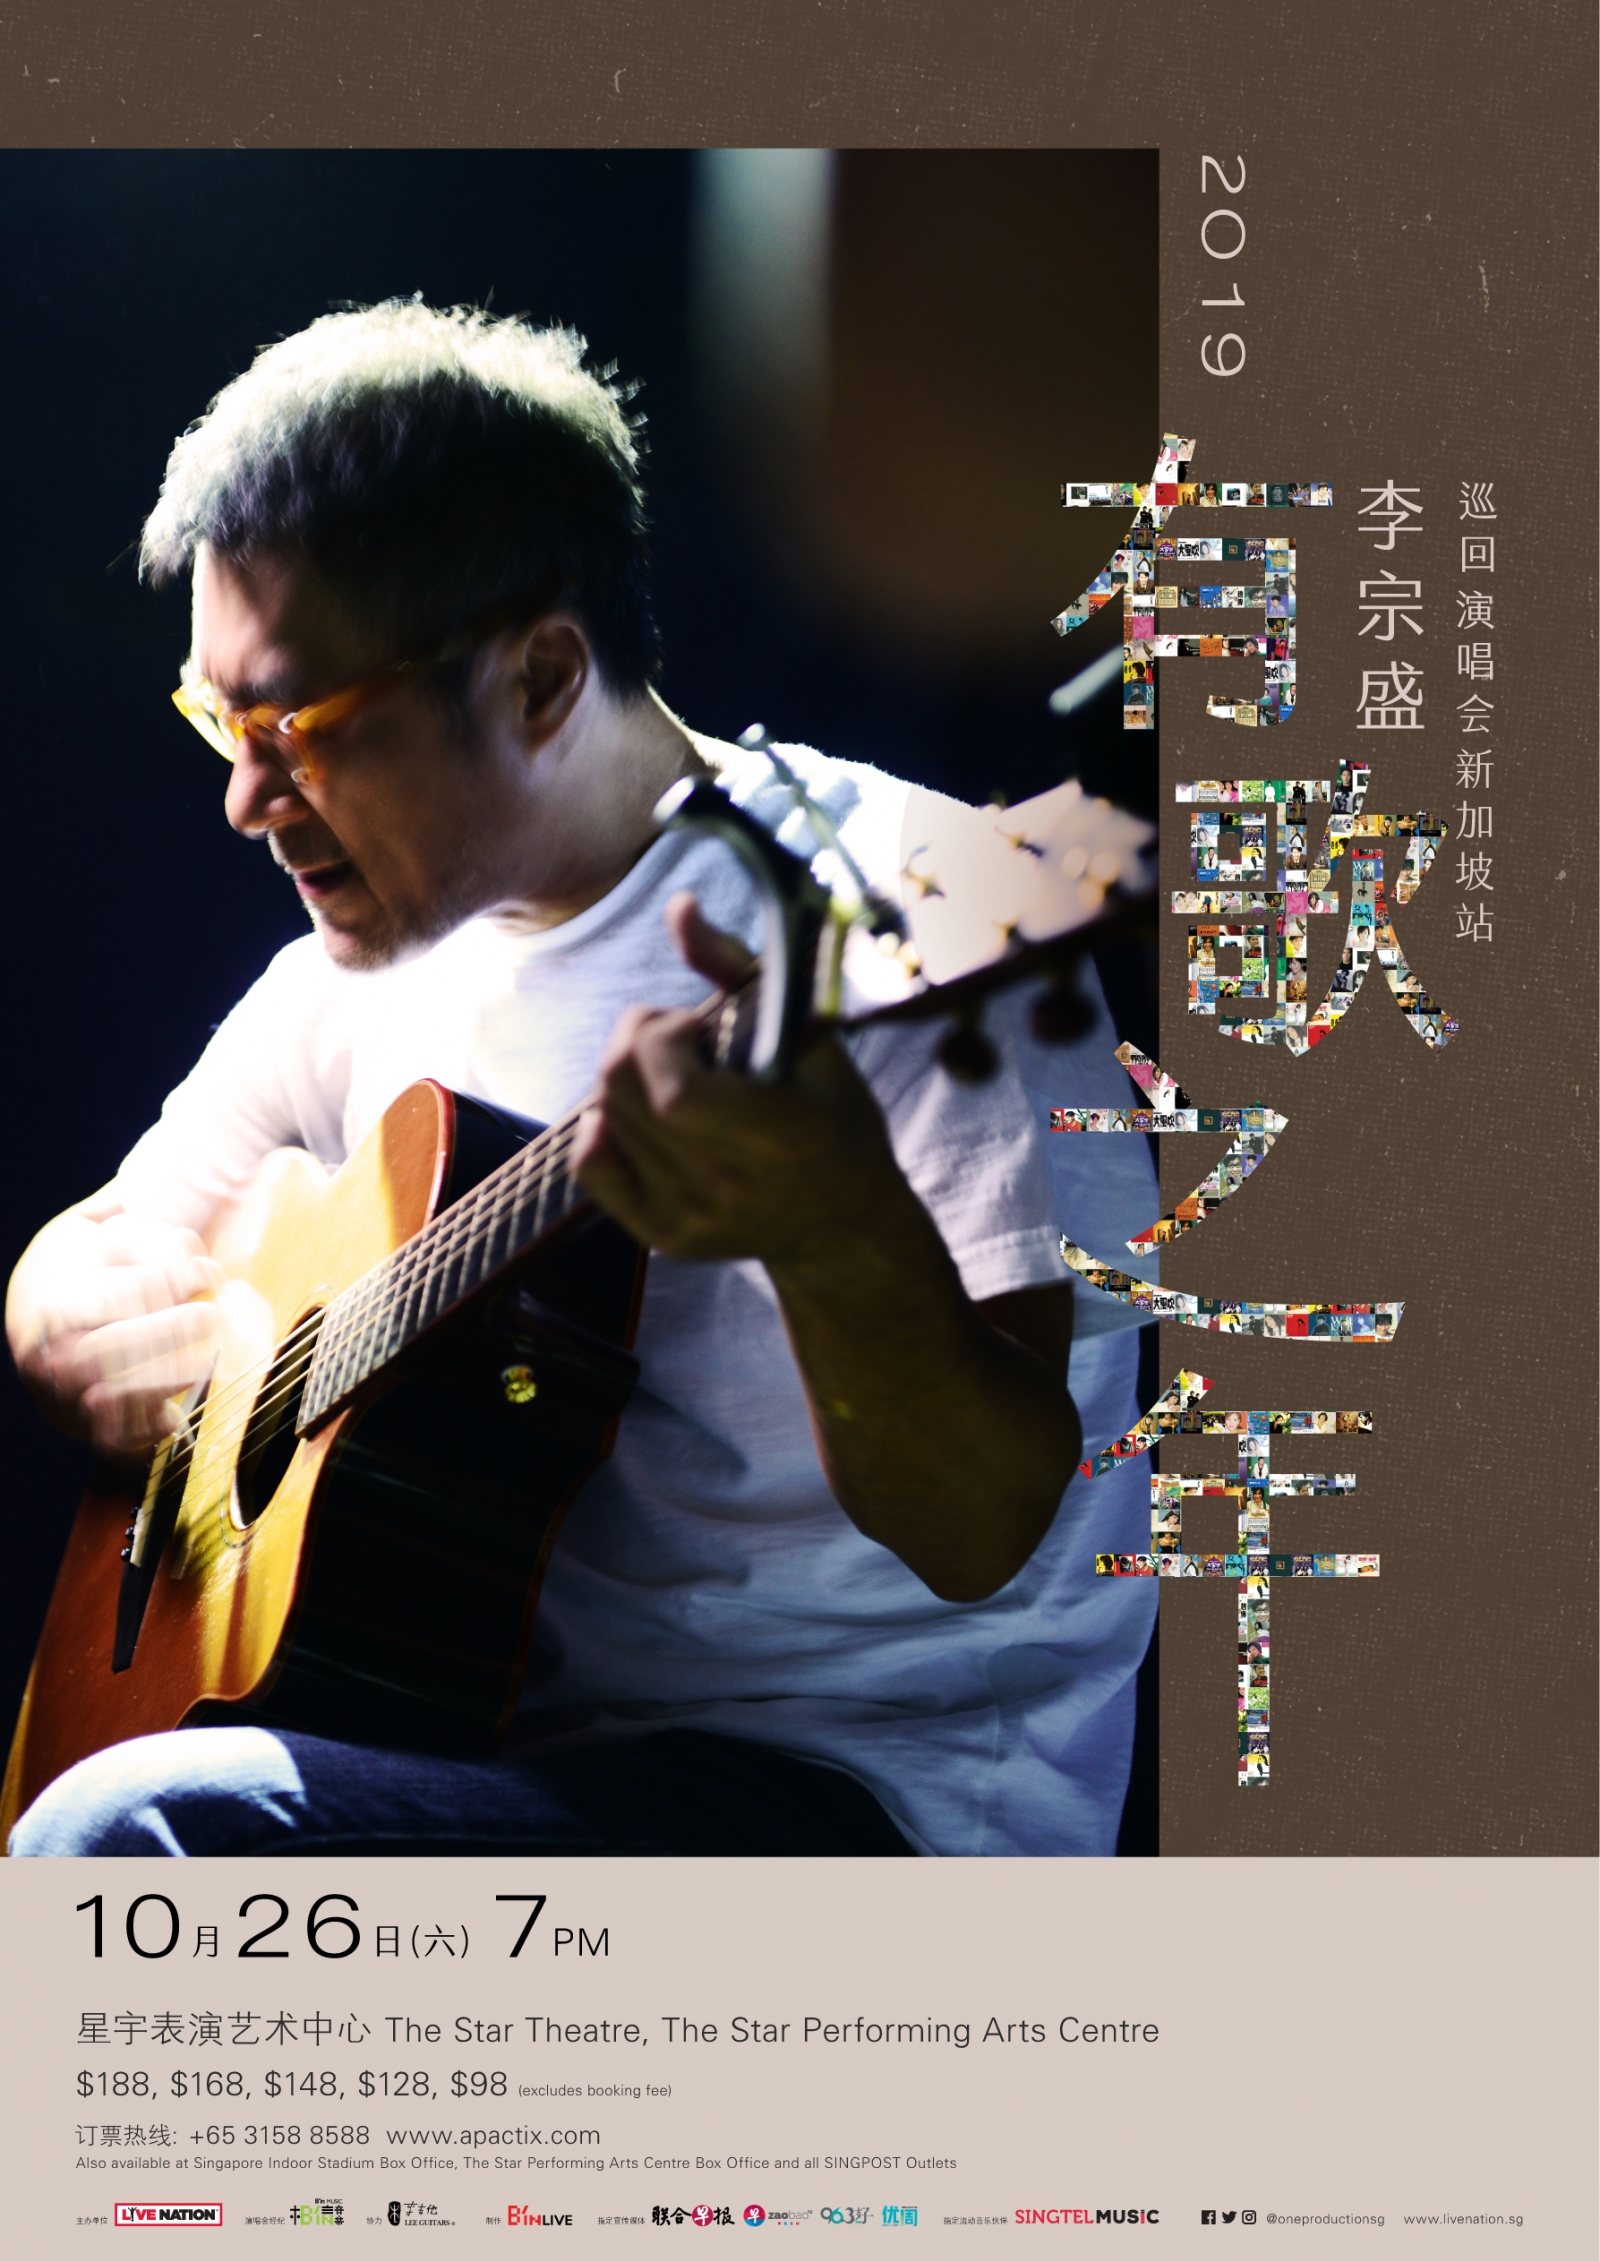 1李宗盛「有歌之年」巡迴演唱會新加坡站 10月26日 .jpg